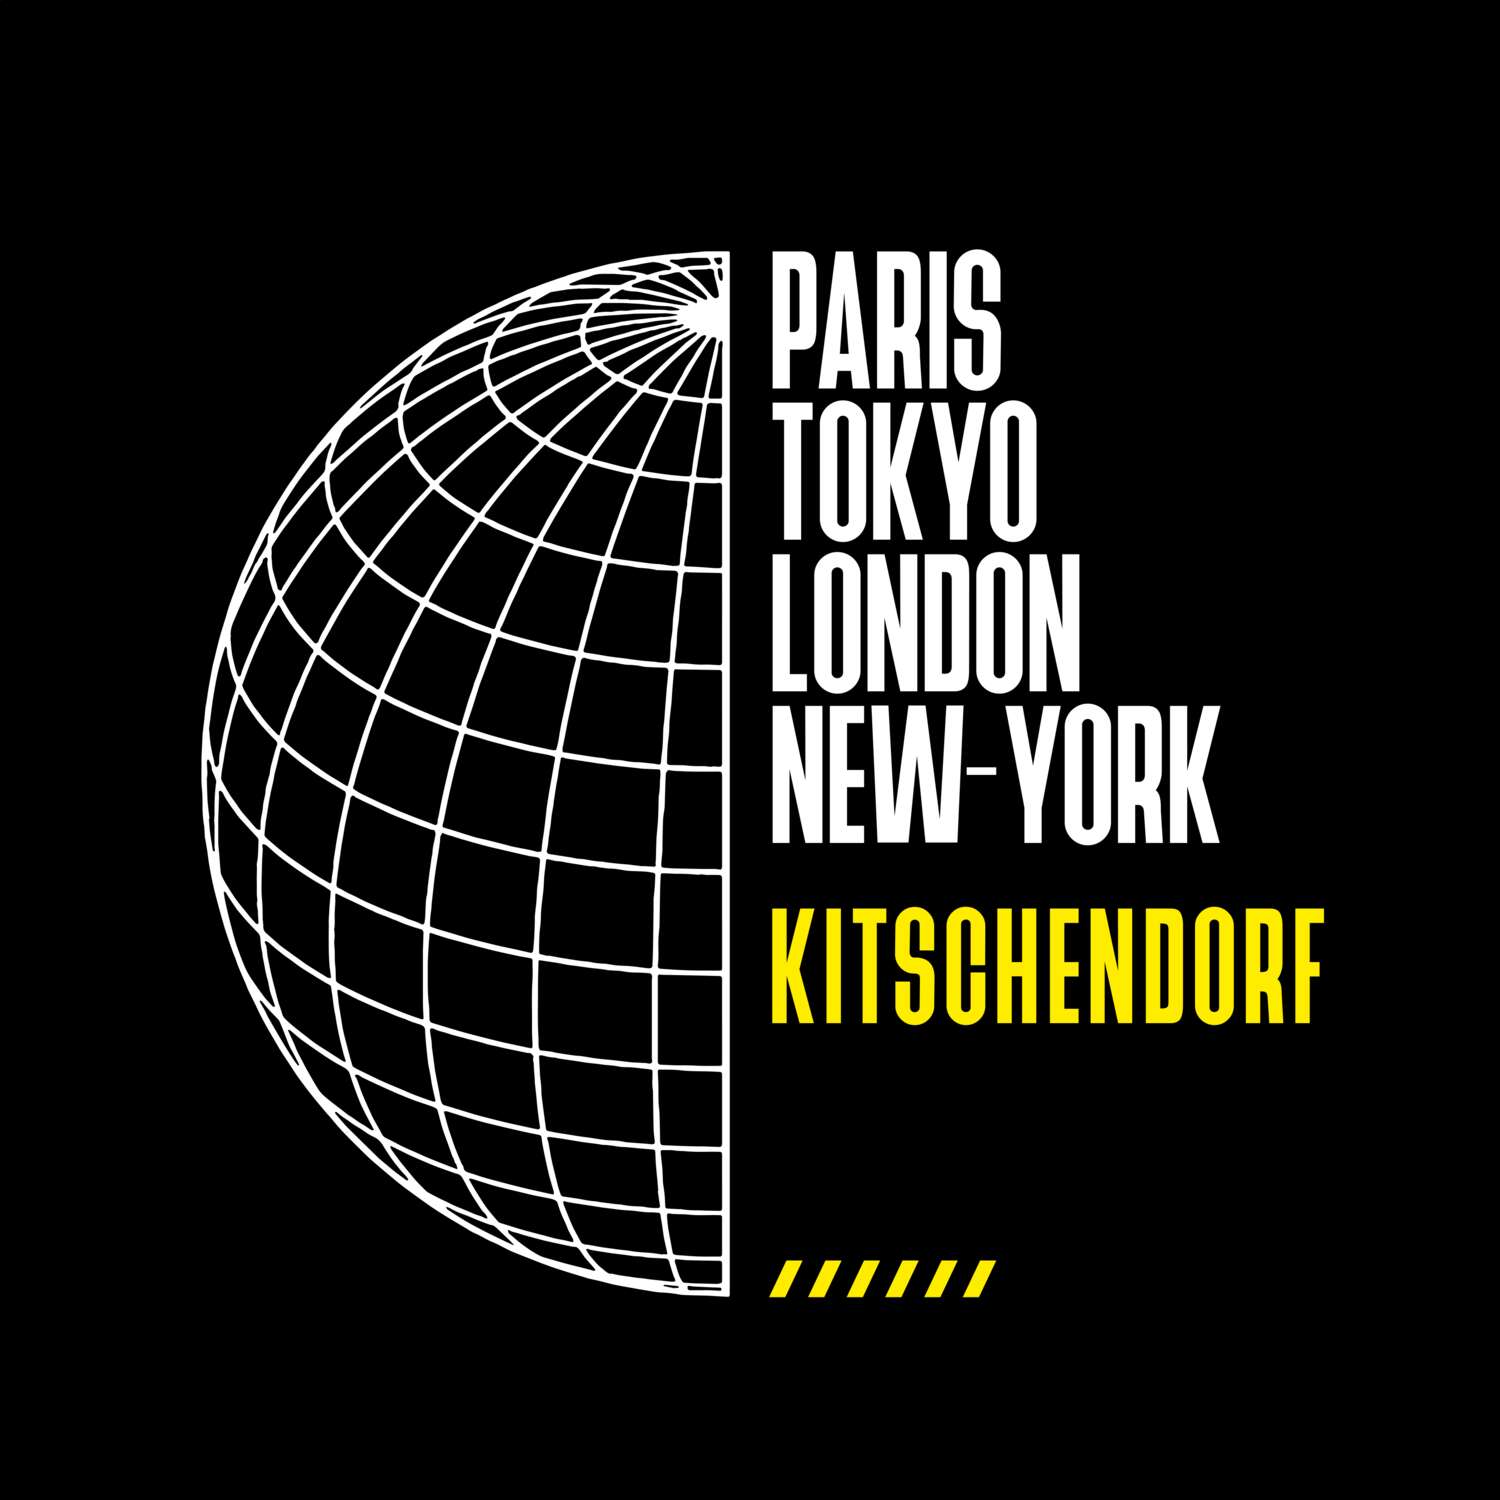 Kitschendorf T-Shirt »Paris Tokyo London«